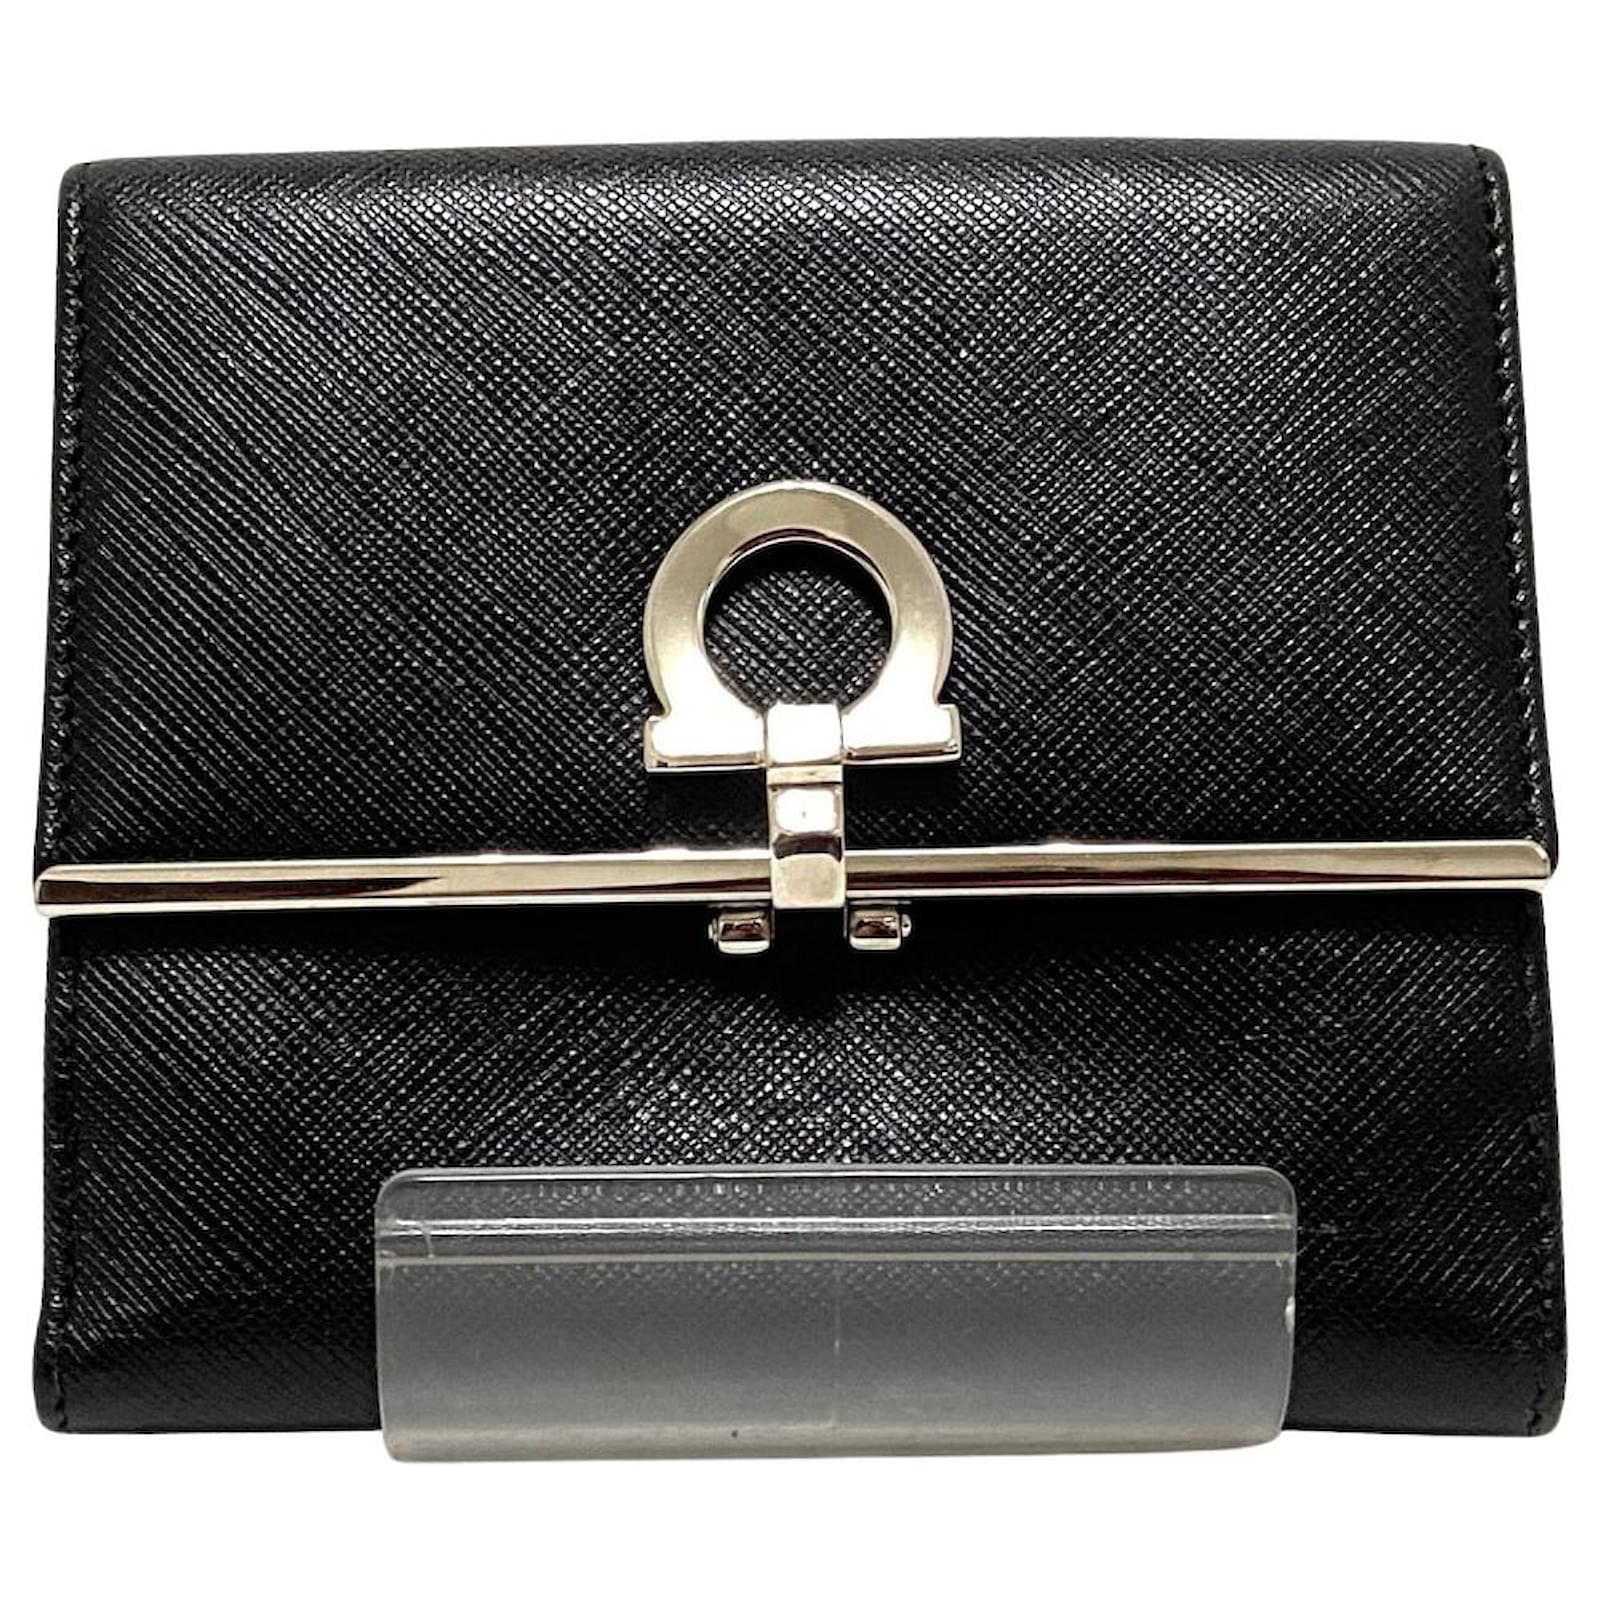 Wallets & purses Salvatore Ferragamo - Gancini leather two-tone